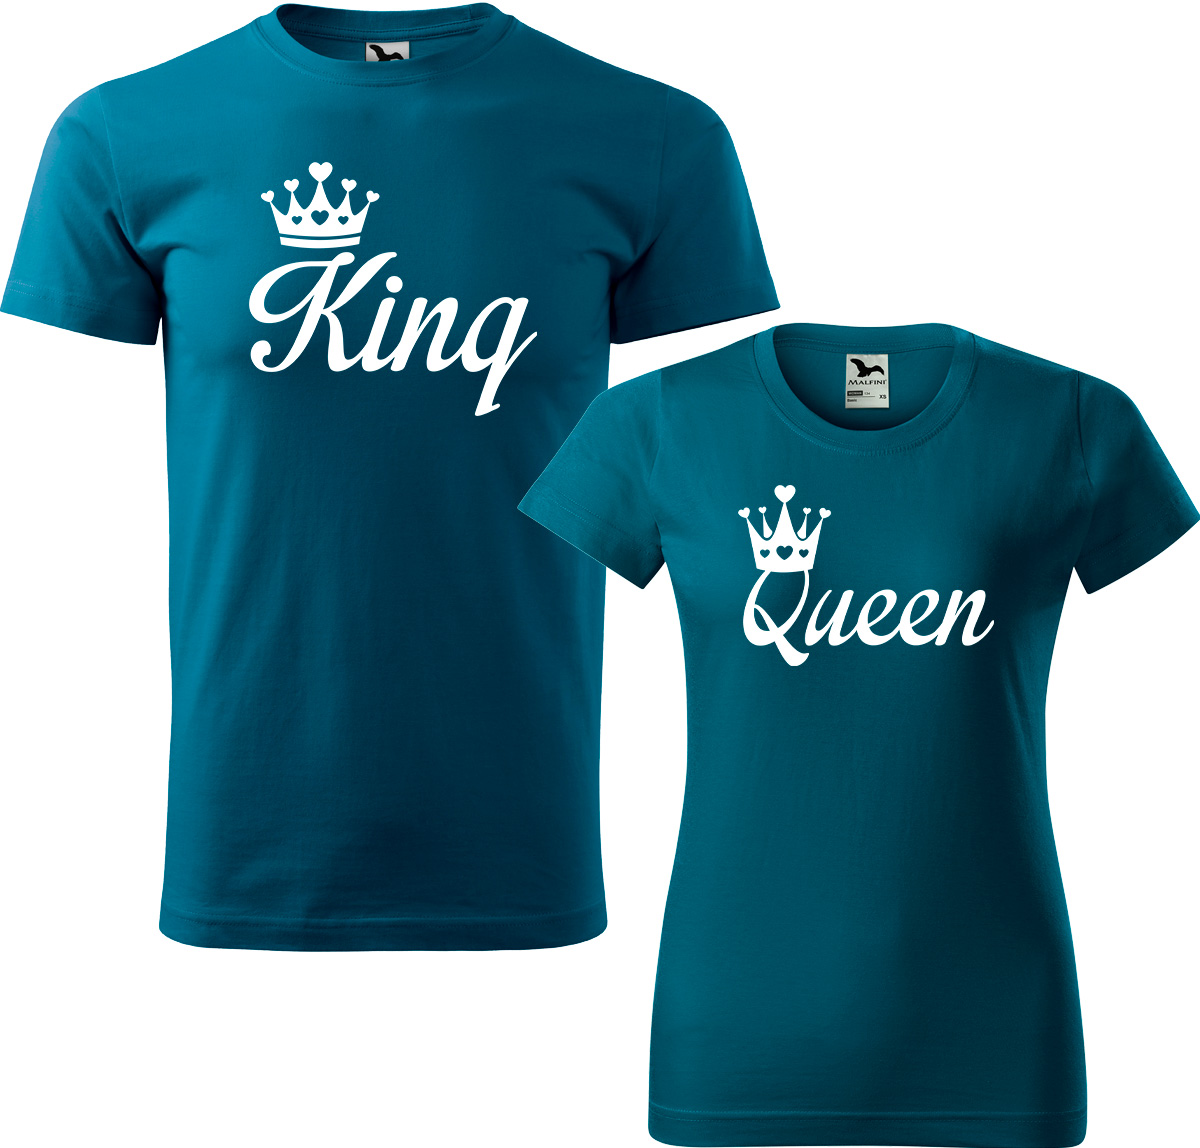 Trička pro páry - King a queen Barva: Petrolejová (93), Velikost dámské tričko: L, Velikost pánské tričko: 4XL